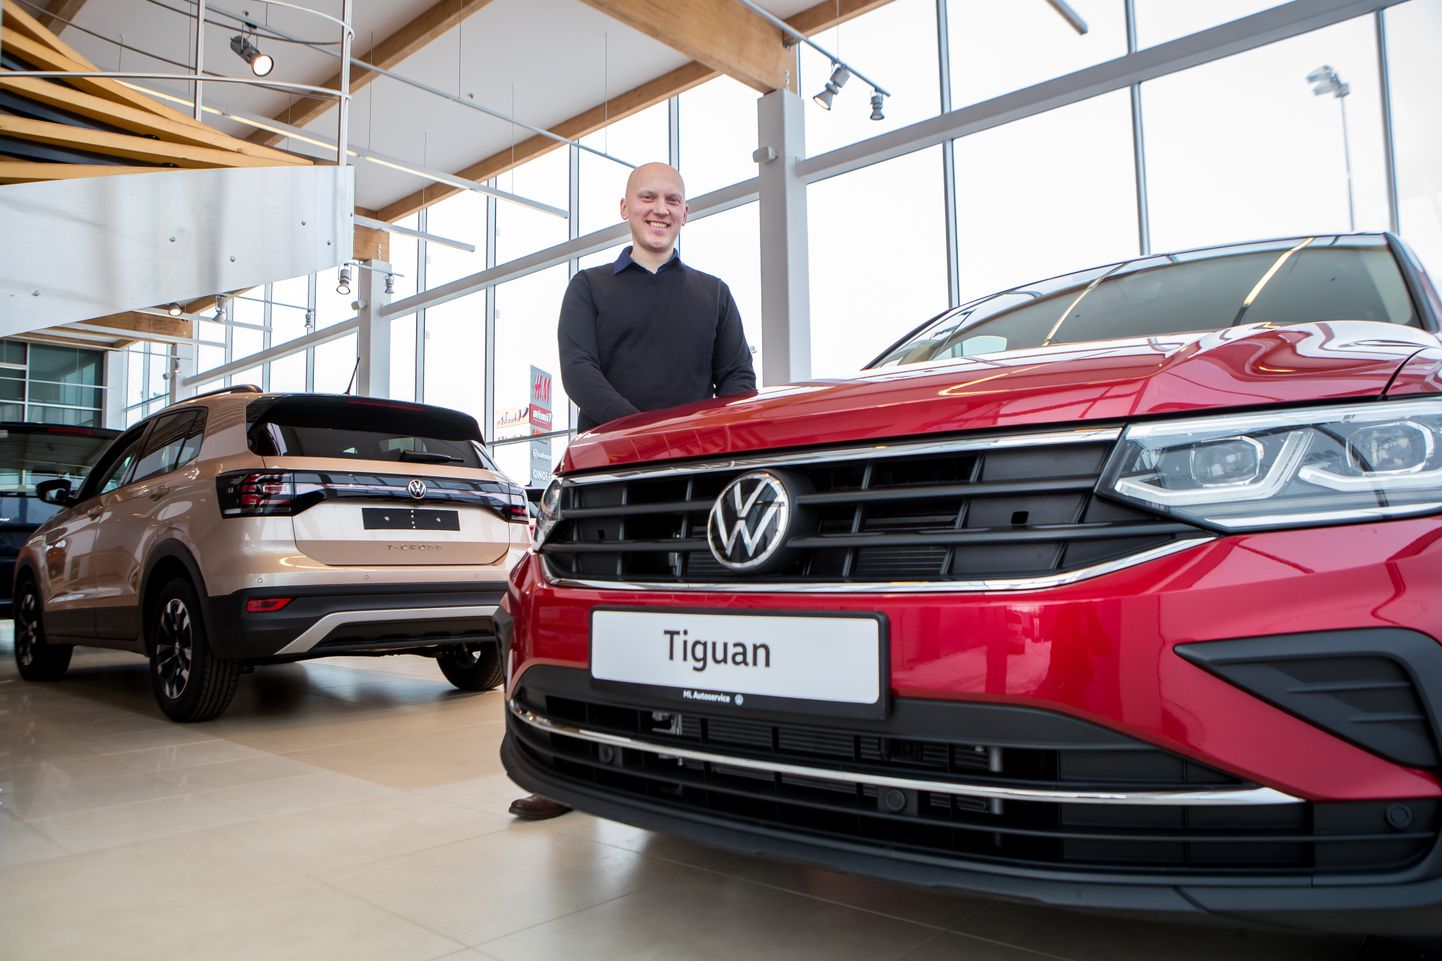 PÕHJUS RÕÕMUSTADA: Volkswagen oli mullu Saaremaal enim müüdud mark, Tiguan aga nõutuim uus mudel, mille värskelt saabunud eksemplari Rain Rohumägi eile kliendile üle andma valmistus.